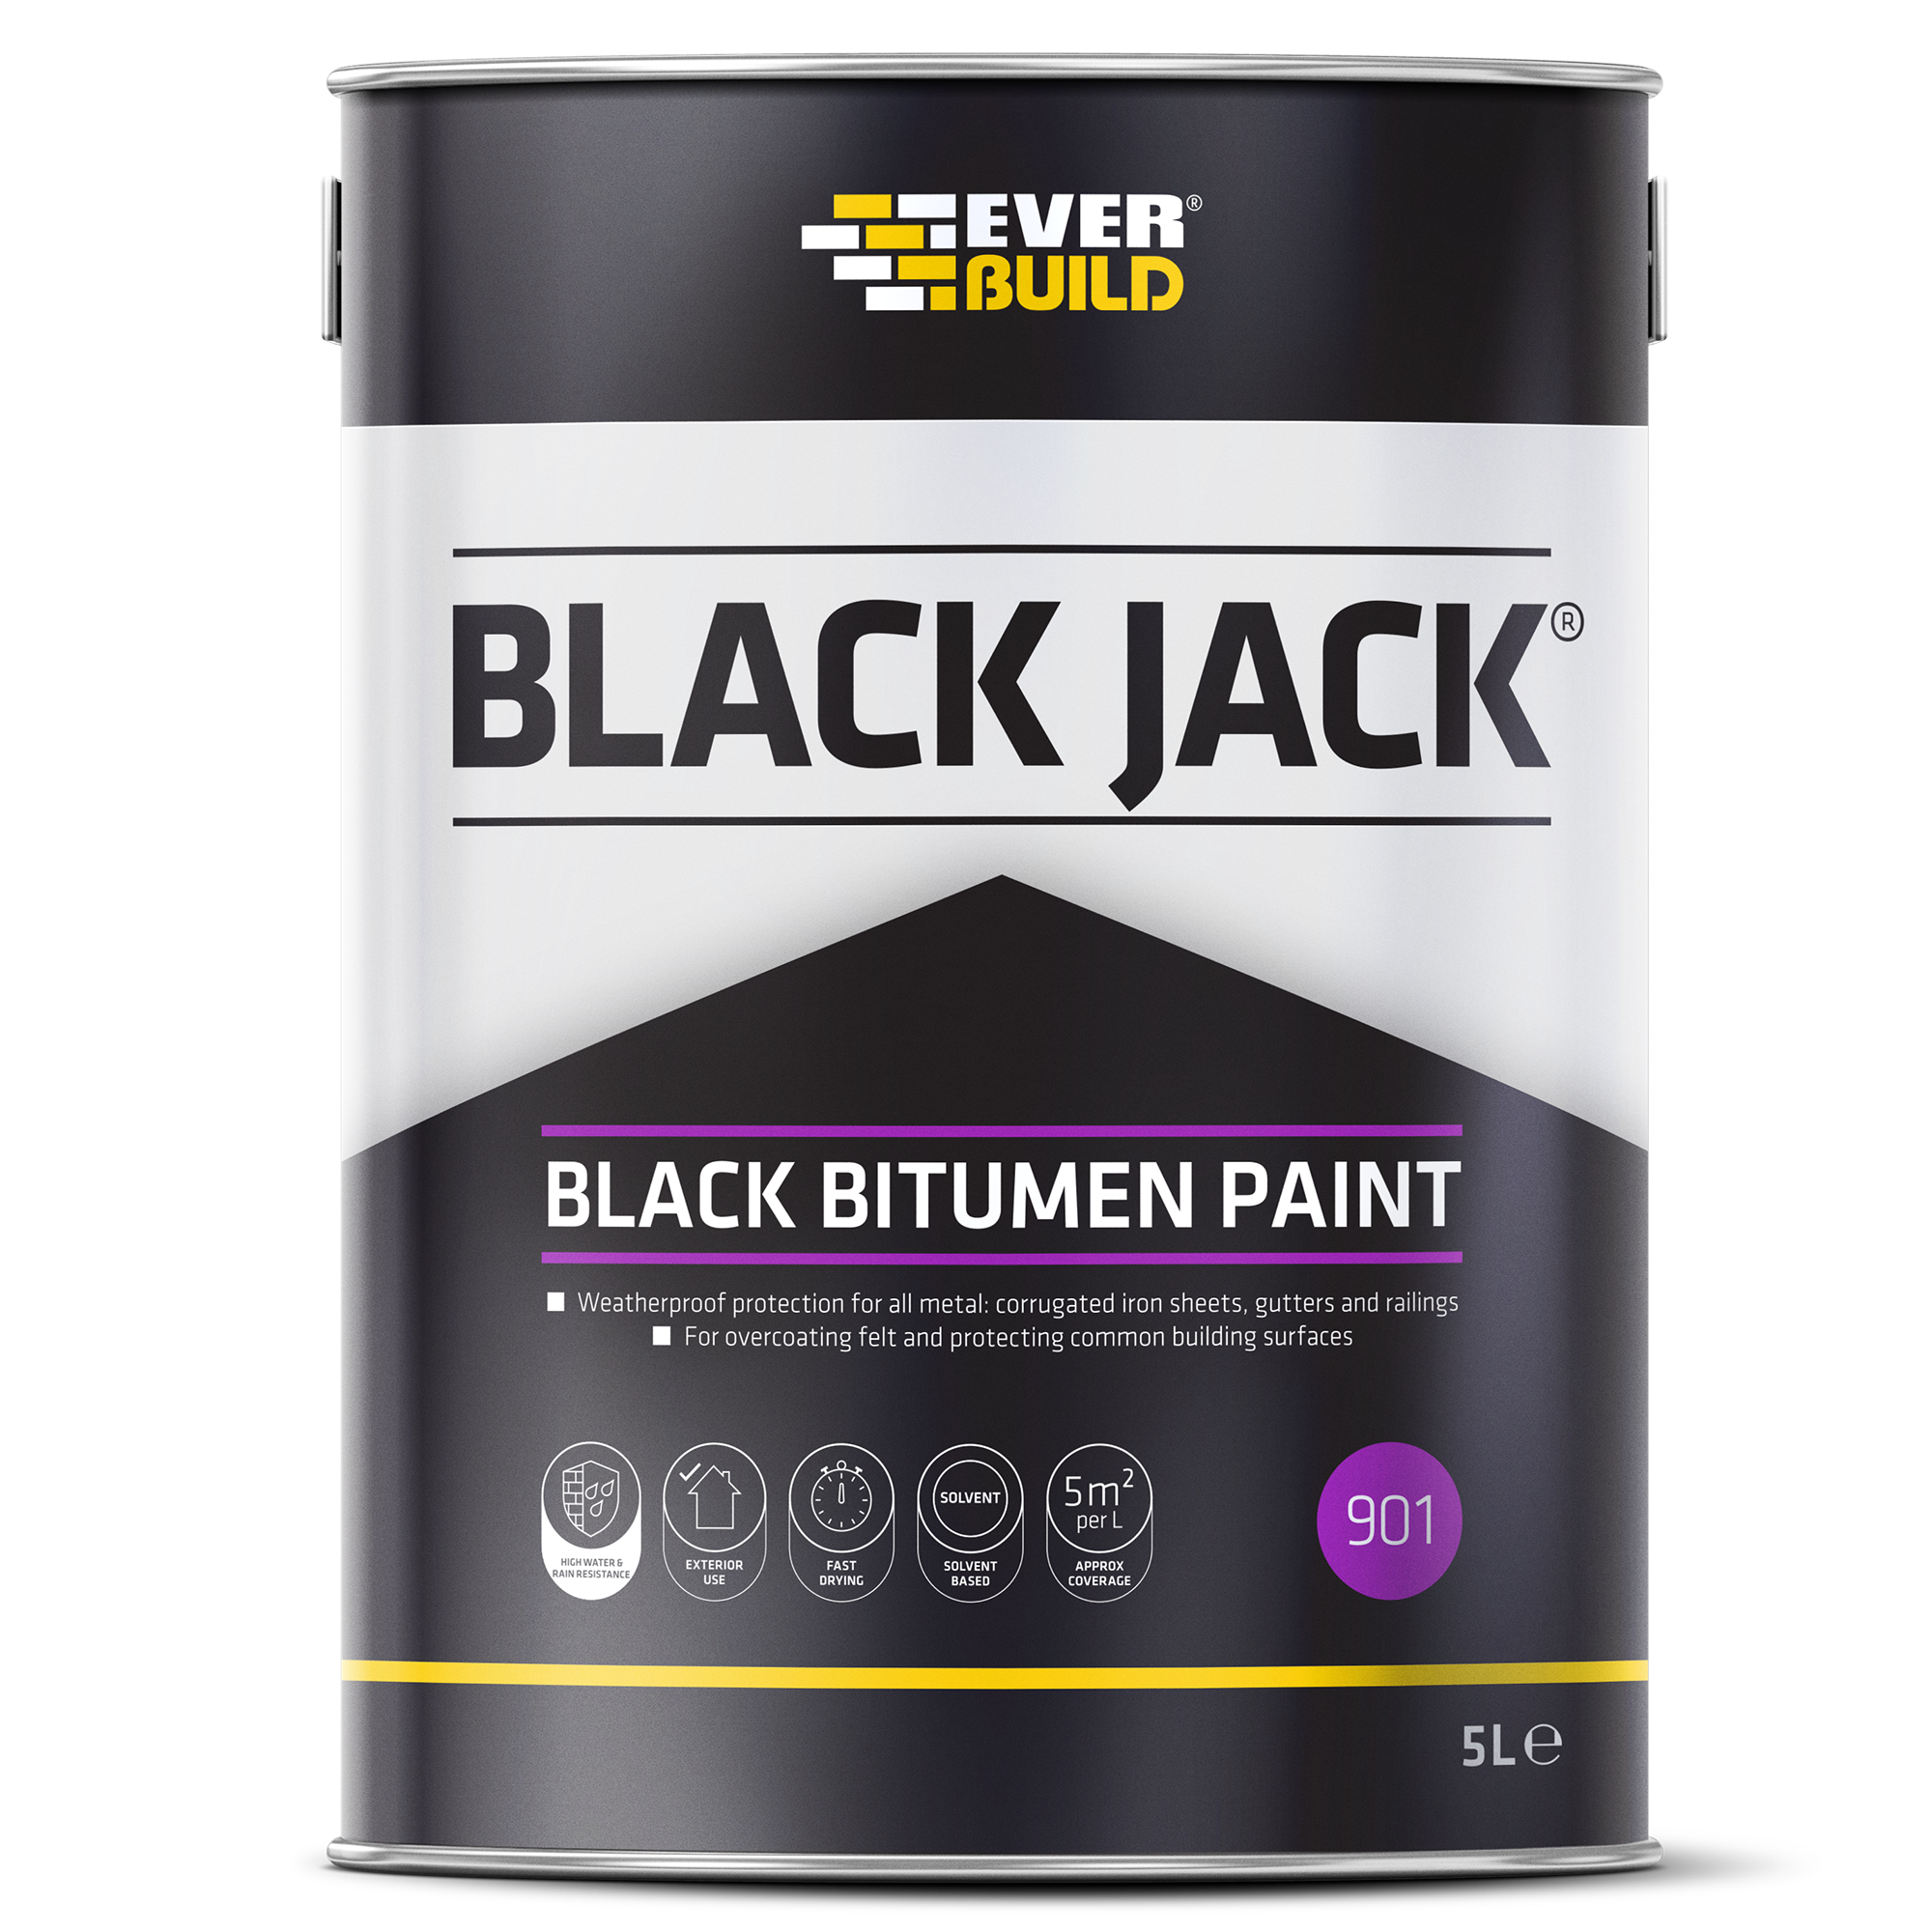 Black Jack 901 Bitumen Paint 5ltr